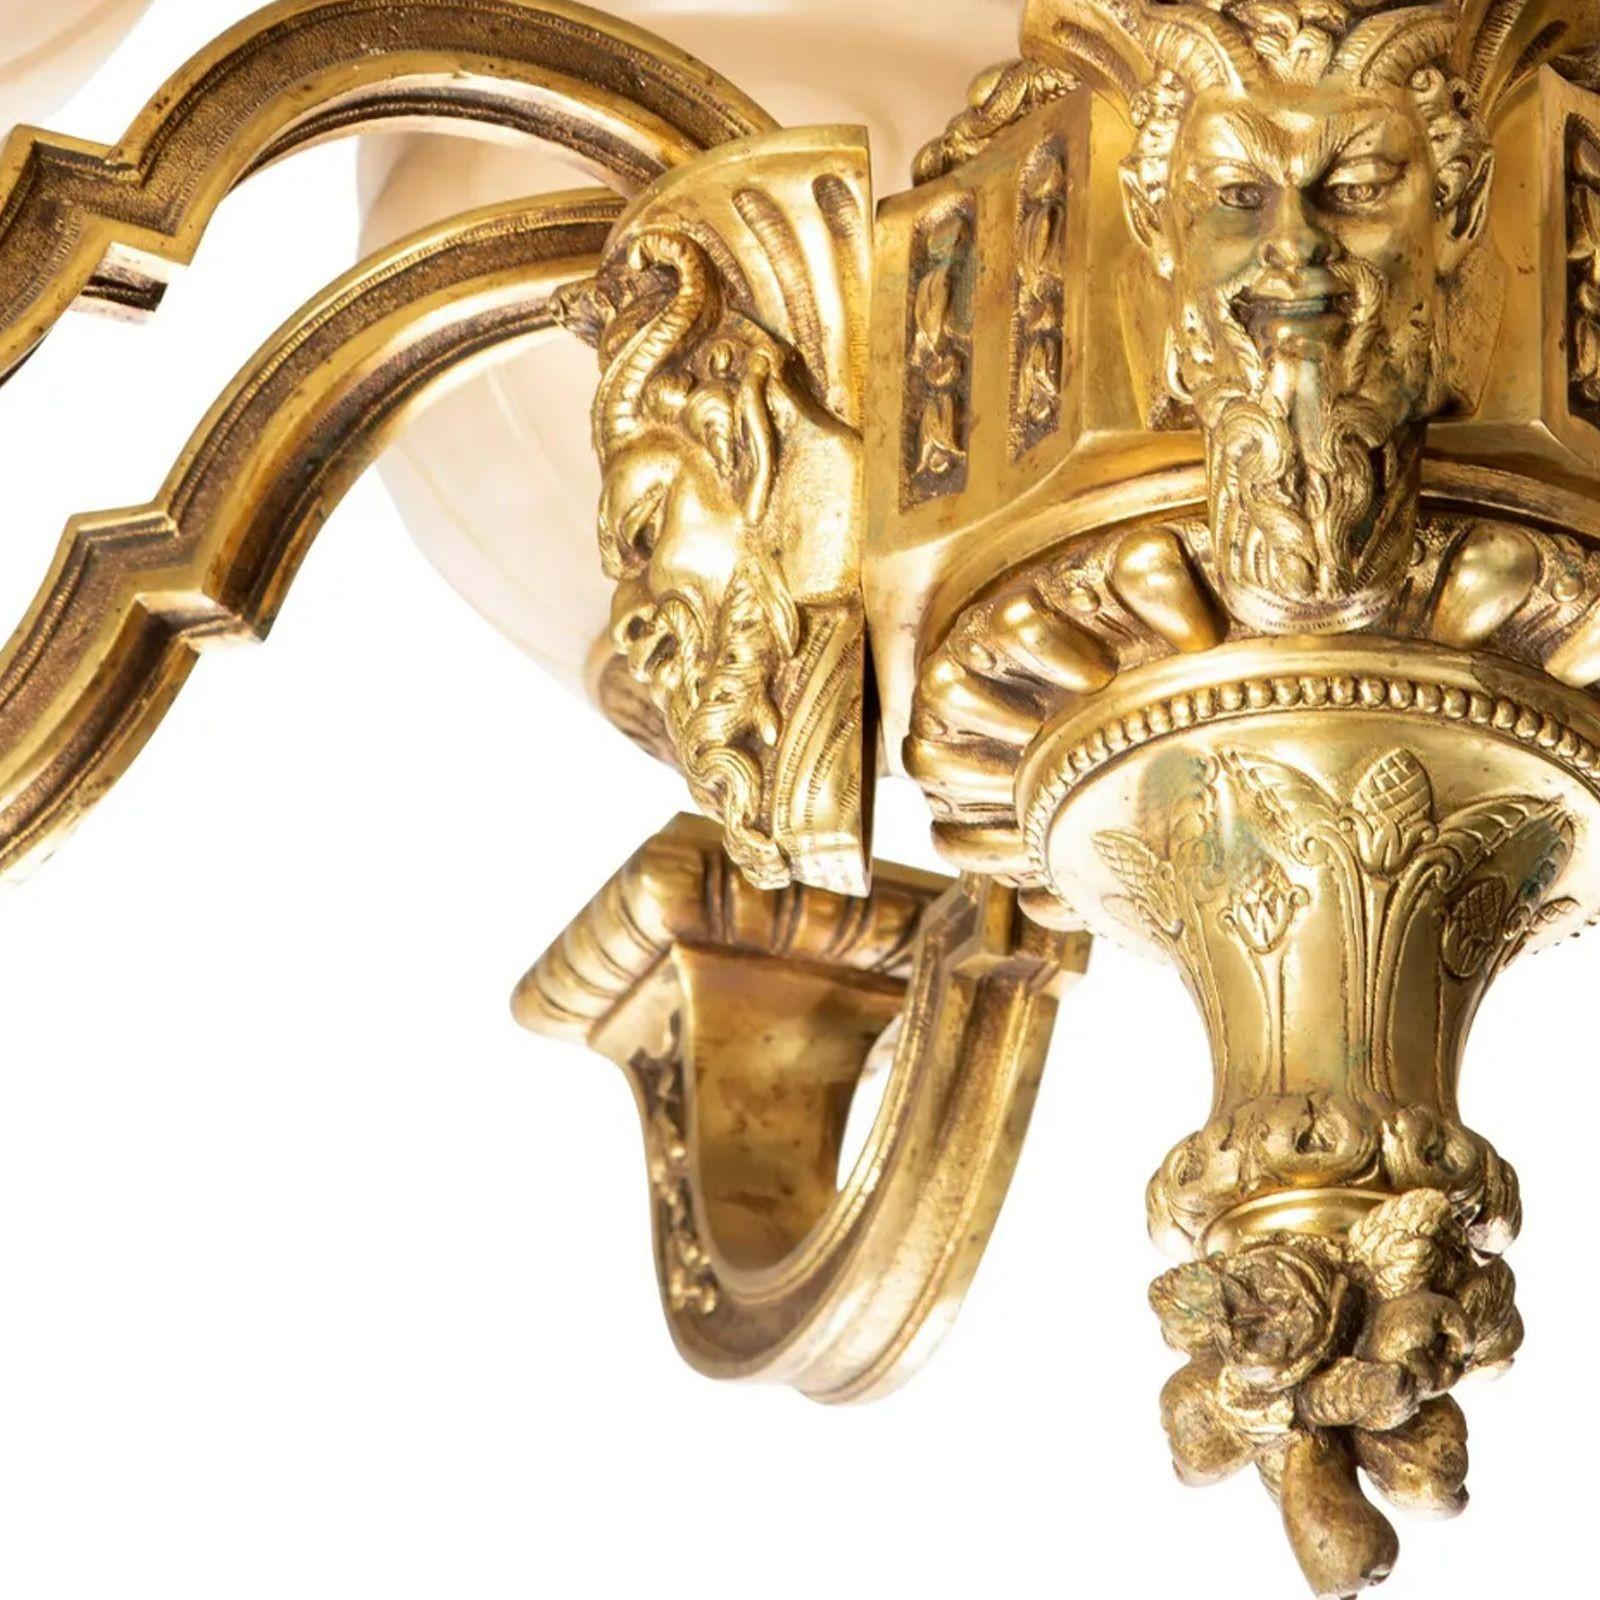 Lustre en bronze doré de la fin du XIXe siècle.
 
Lustre à huit lumières en bronze doré entouré de bras montés sur un masque de gargouille et de huit abat-jour en albâtre/marbre sculpté, électrifié.
33.5